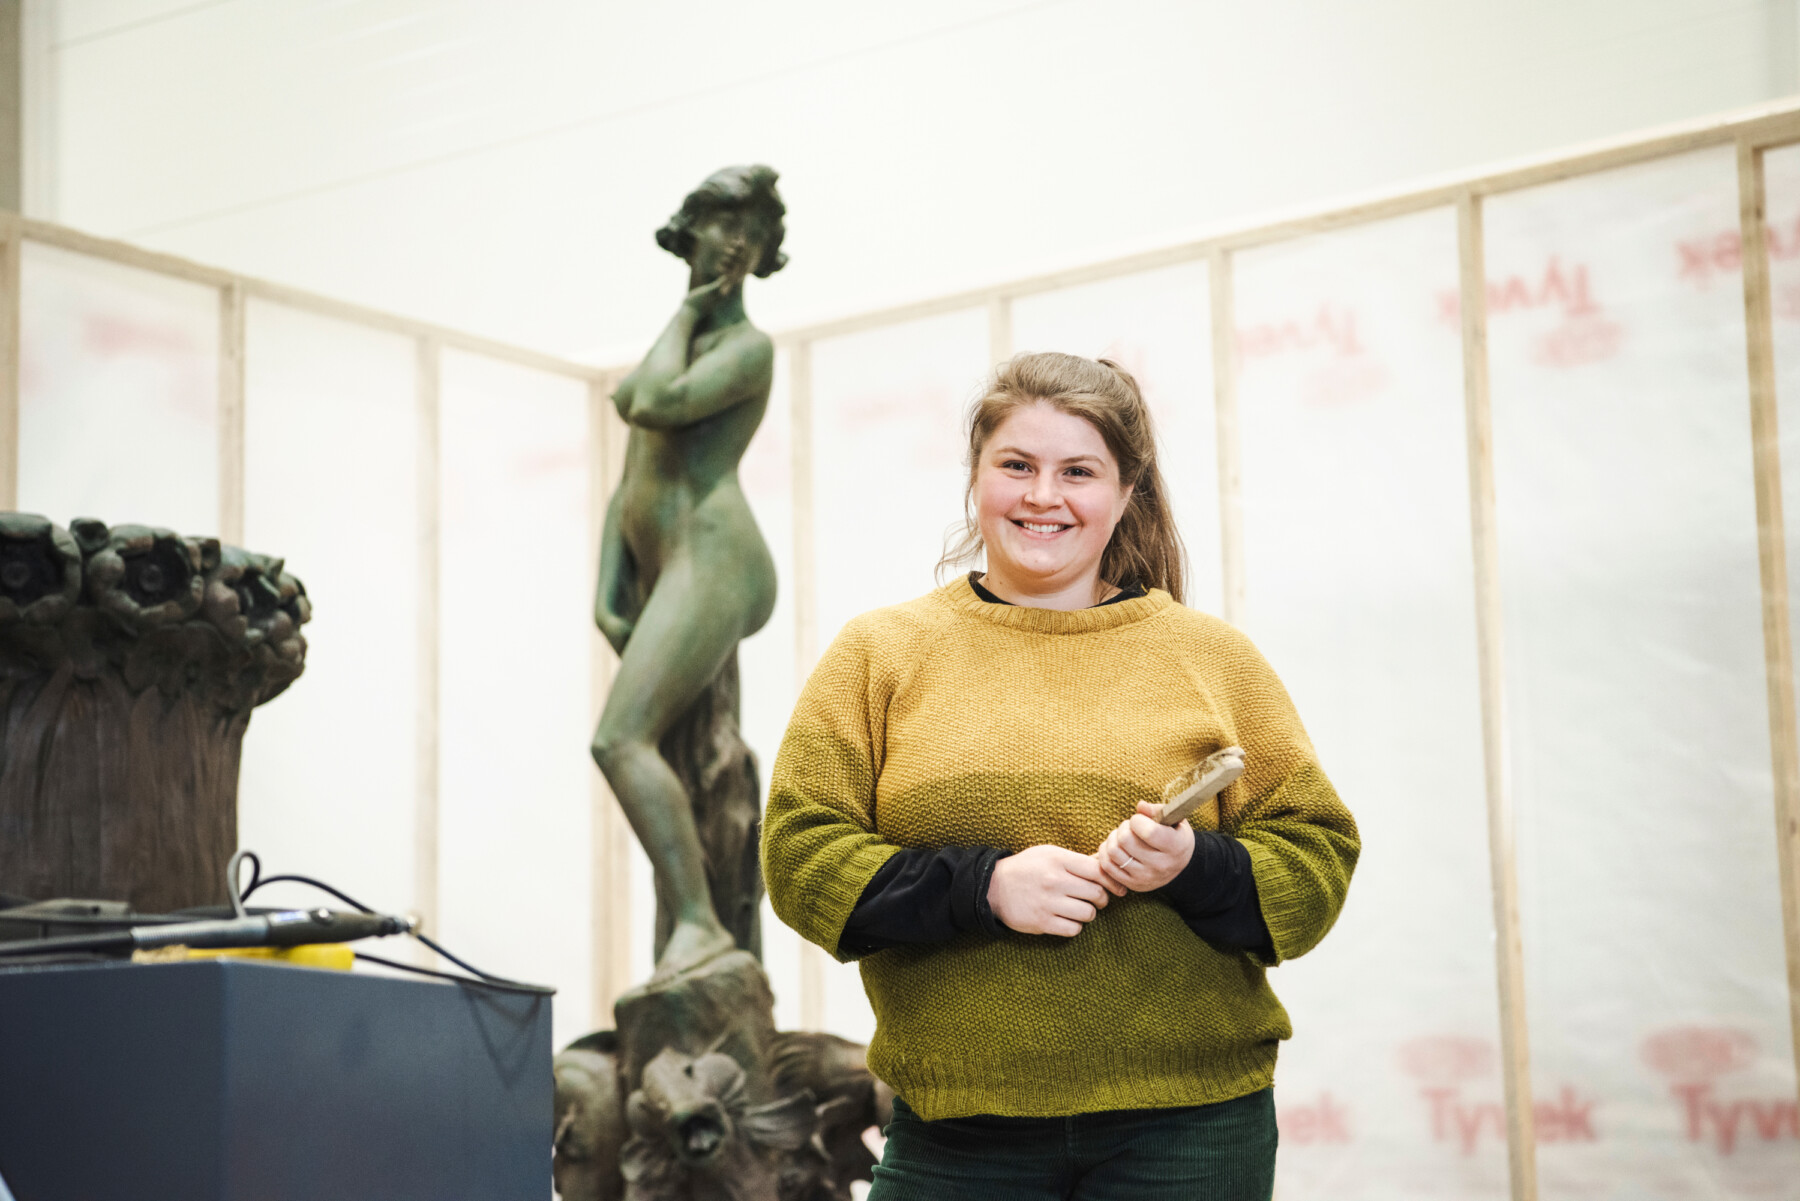 Eine Frau mit einer Bürste in der Hand steht in einer Werkstatt vor einer Metallstatue einer weiblichen Figur.